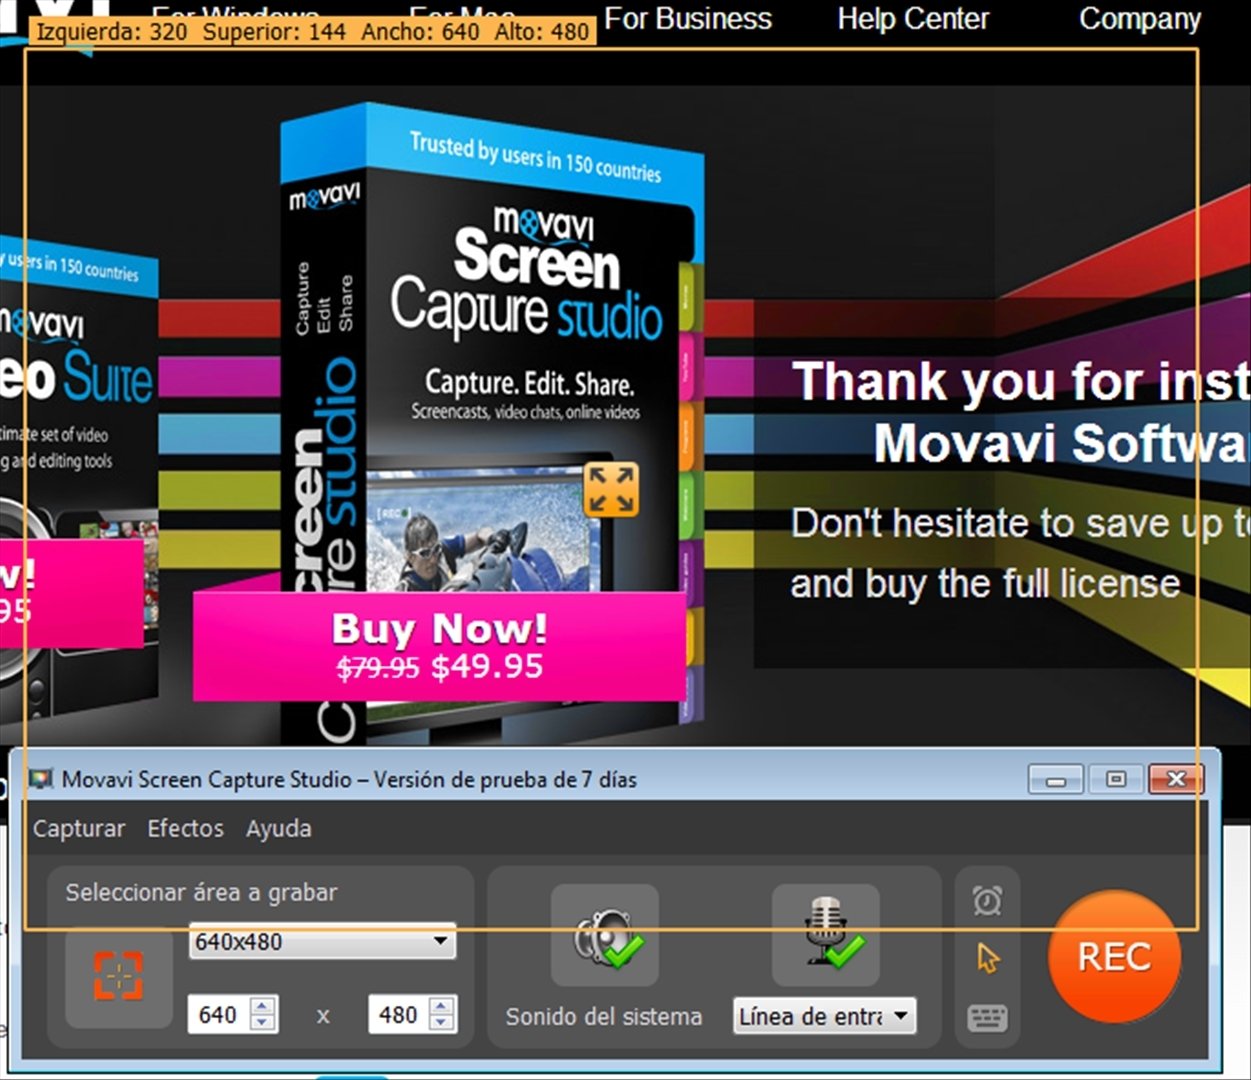 movavi screen capture studio compare free download